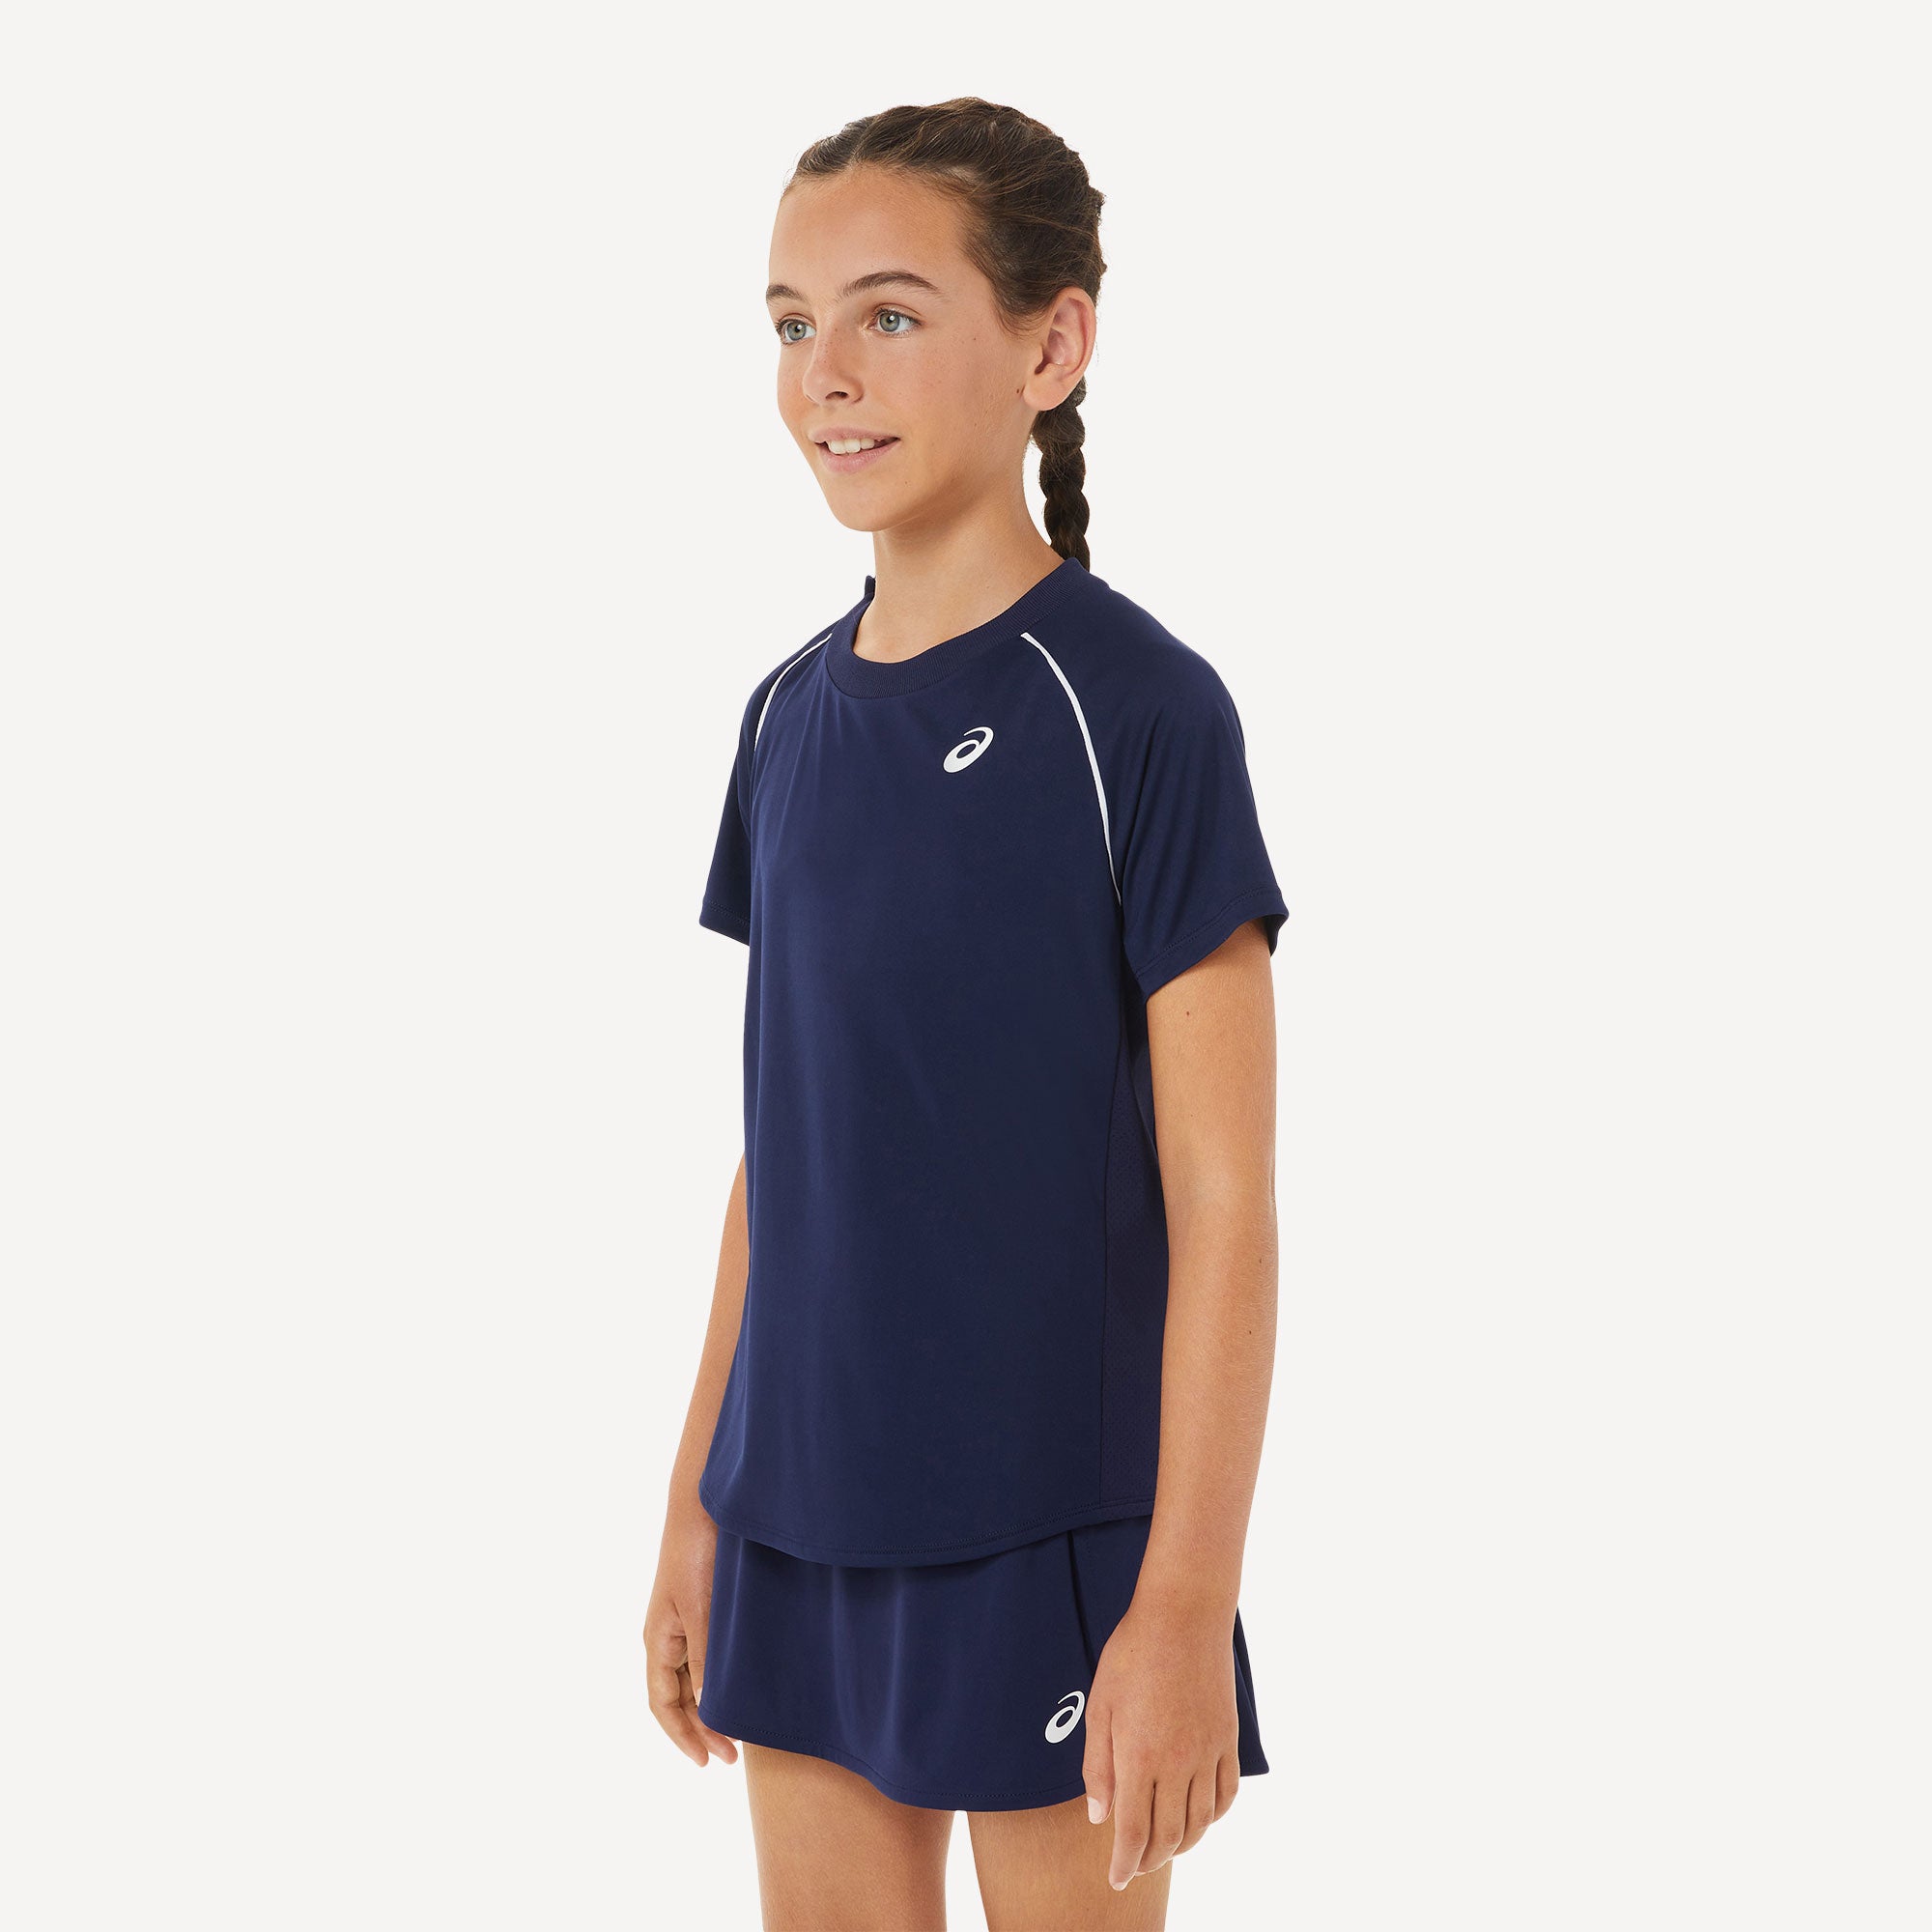 ASICS Girls' Tennis Shirt Blue (3)